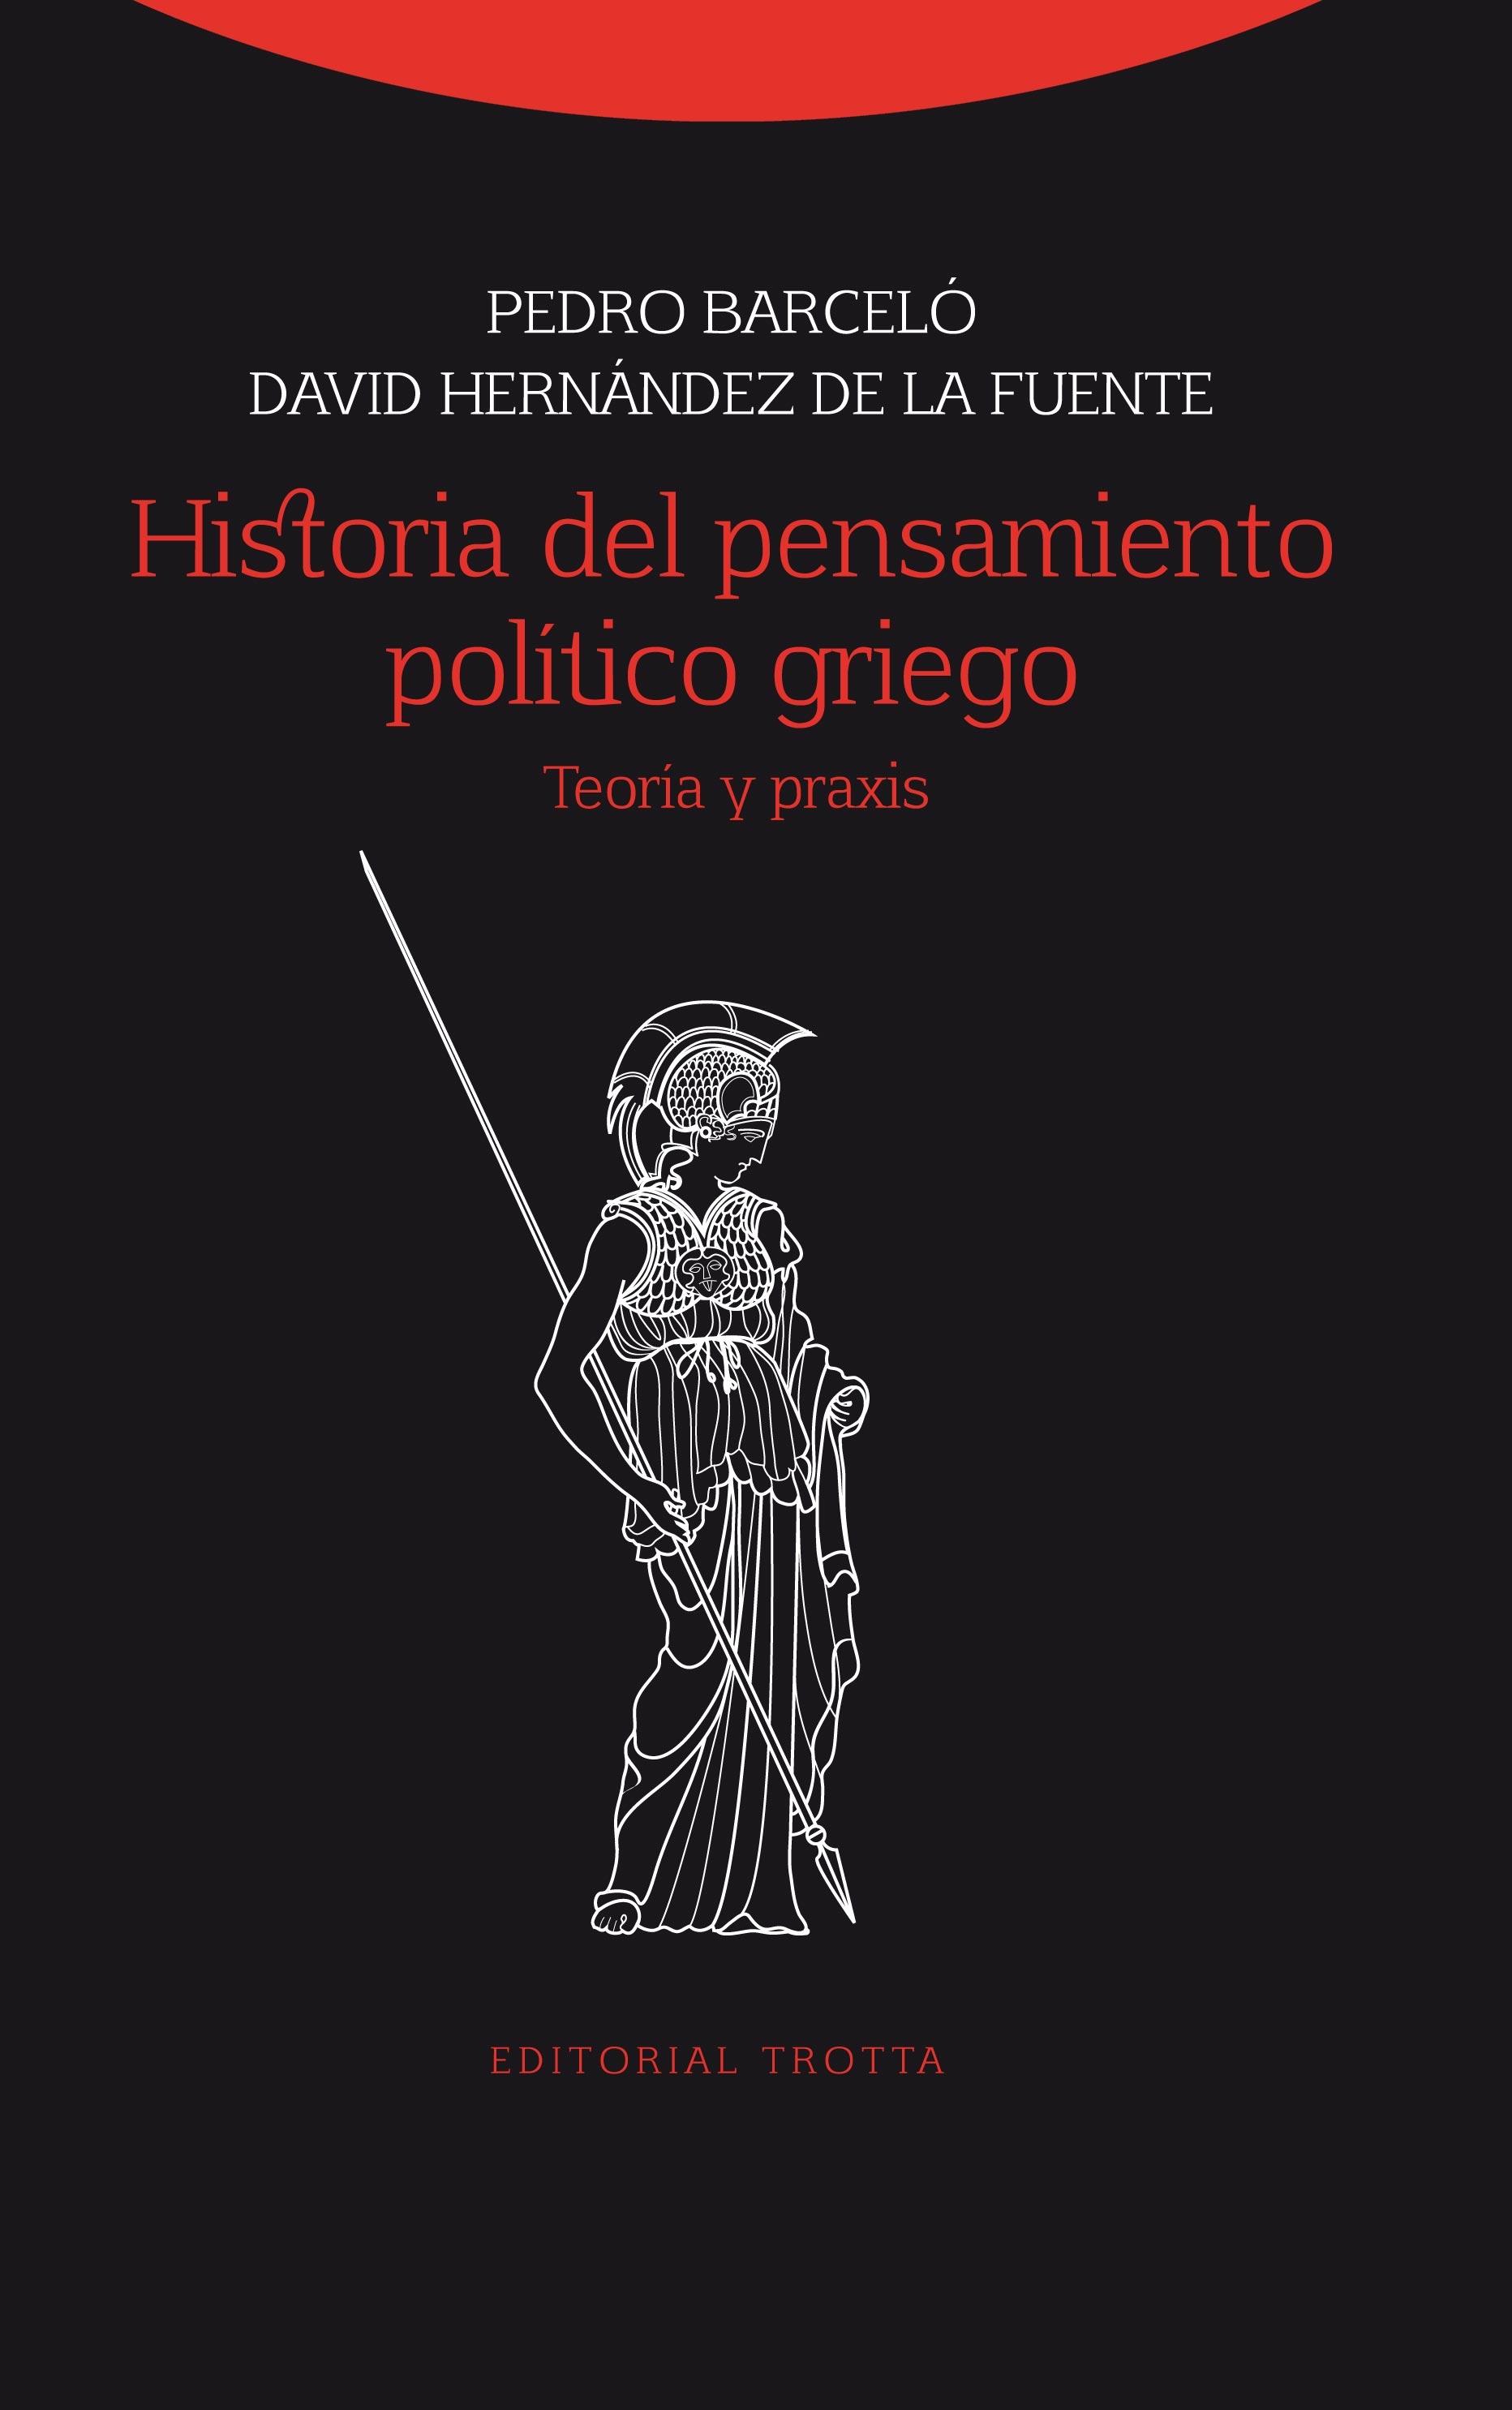 HISTORIA DEL PENSAMIENTO POLITICO GRIEGO "TEORÍA Y PRAXIS". 